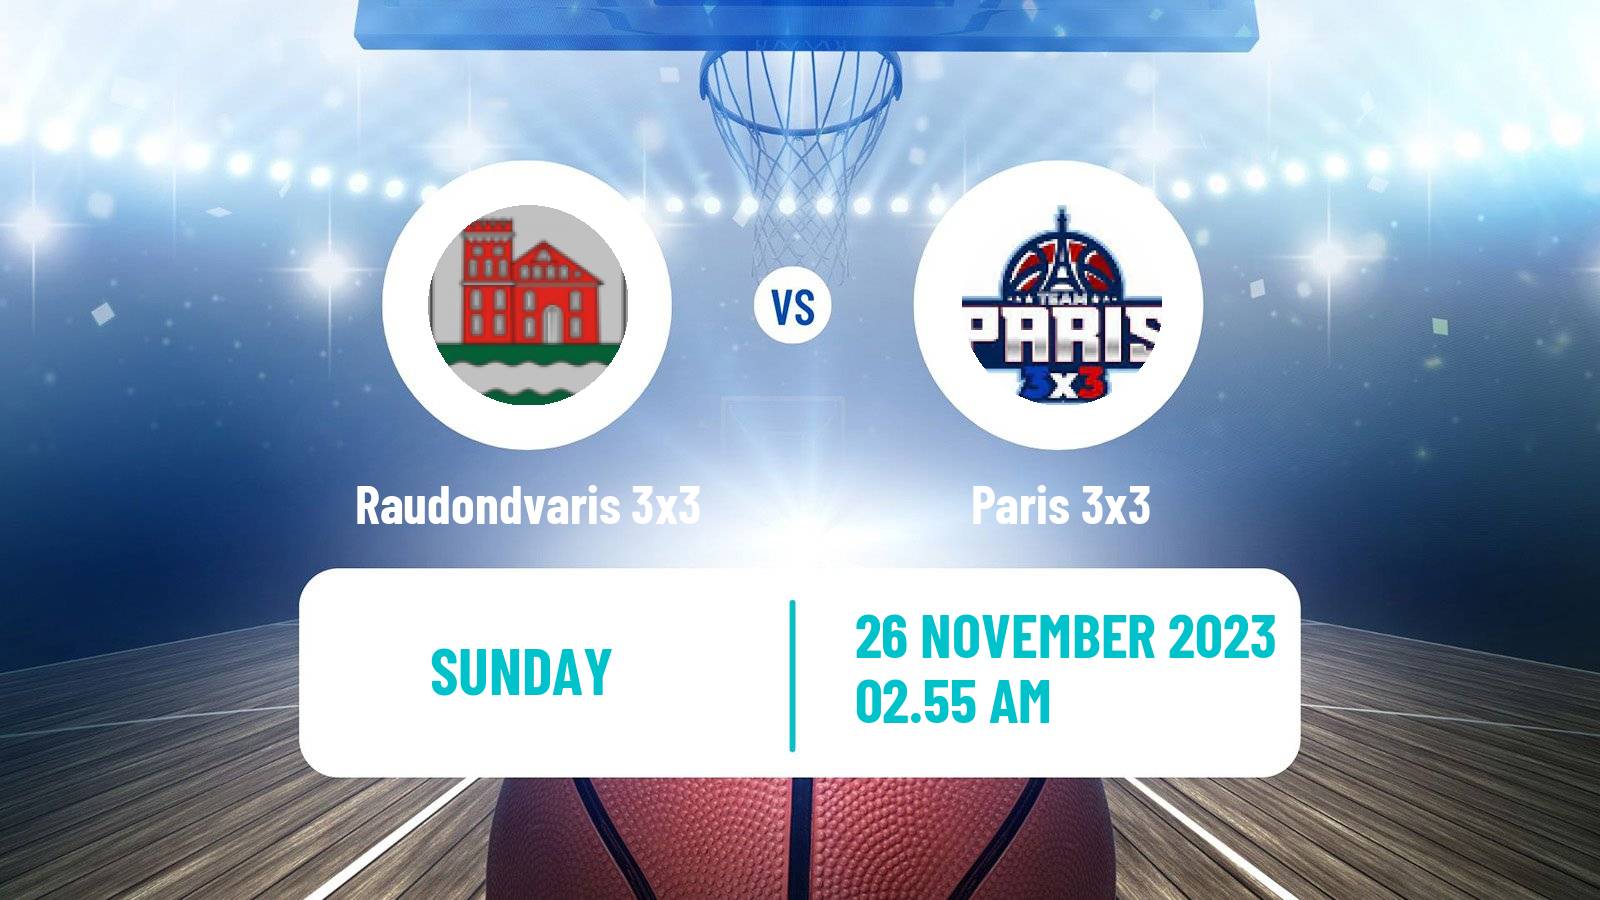 Basketball World Tour Hong Kong 3x3 Raudondvaris 3x3 - Paris 3x3